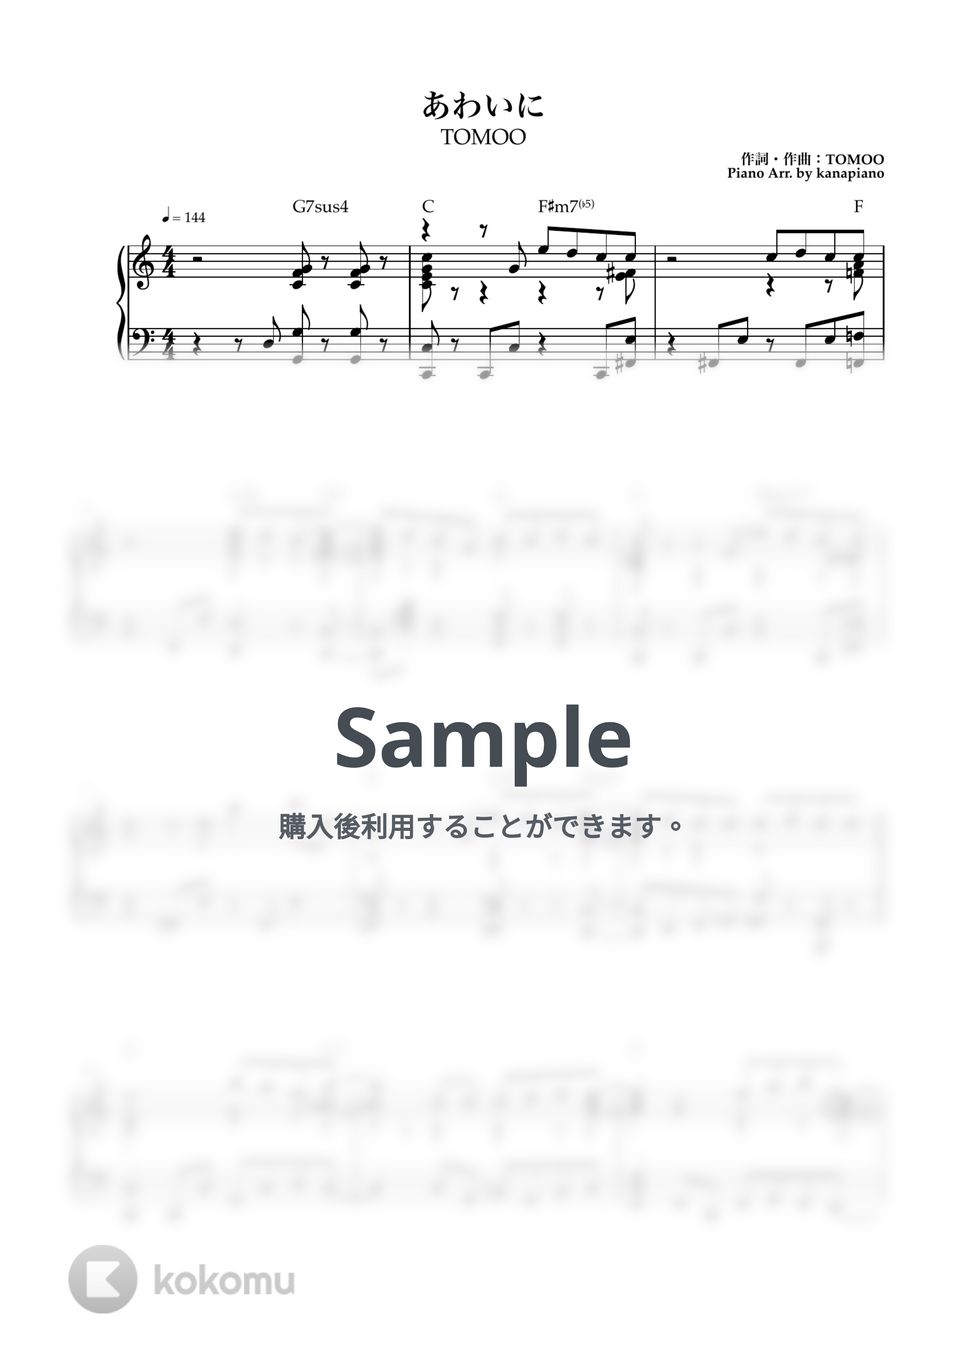 TOMOO - あわいに (ピアノソロ/TOMOO/あわいに) by kanapiano